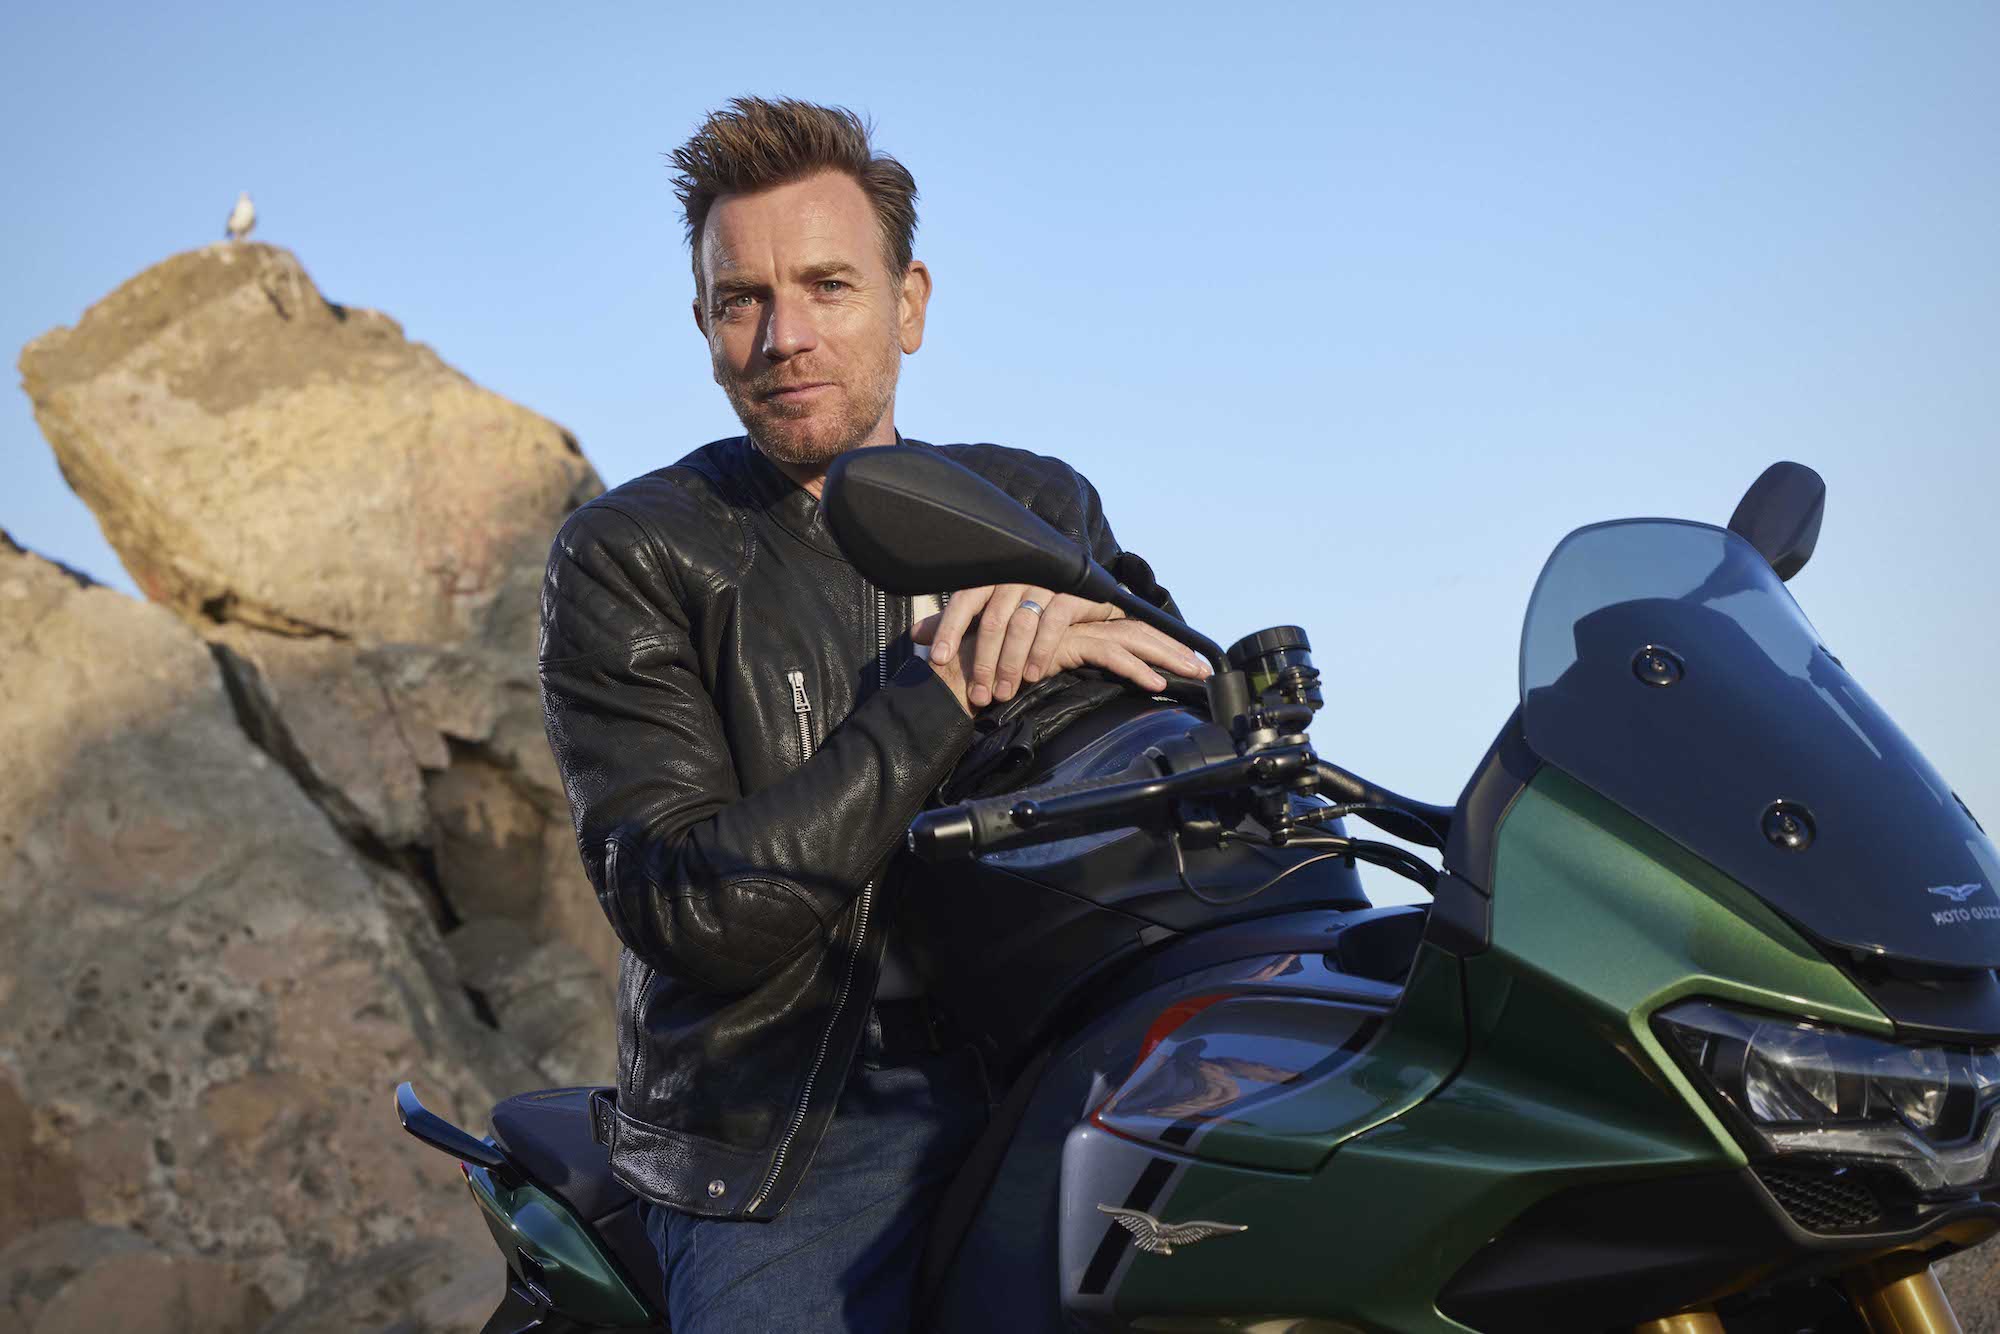 伊万·麦格雷戈骑的摩托Guzzi机器品牌的新赛季,“下一个旅程。“媒体来自品牌最近的新闻稿。